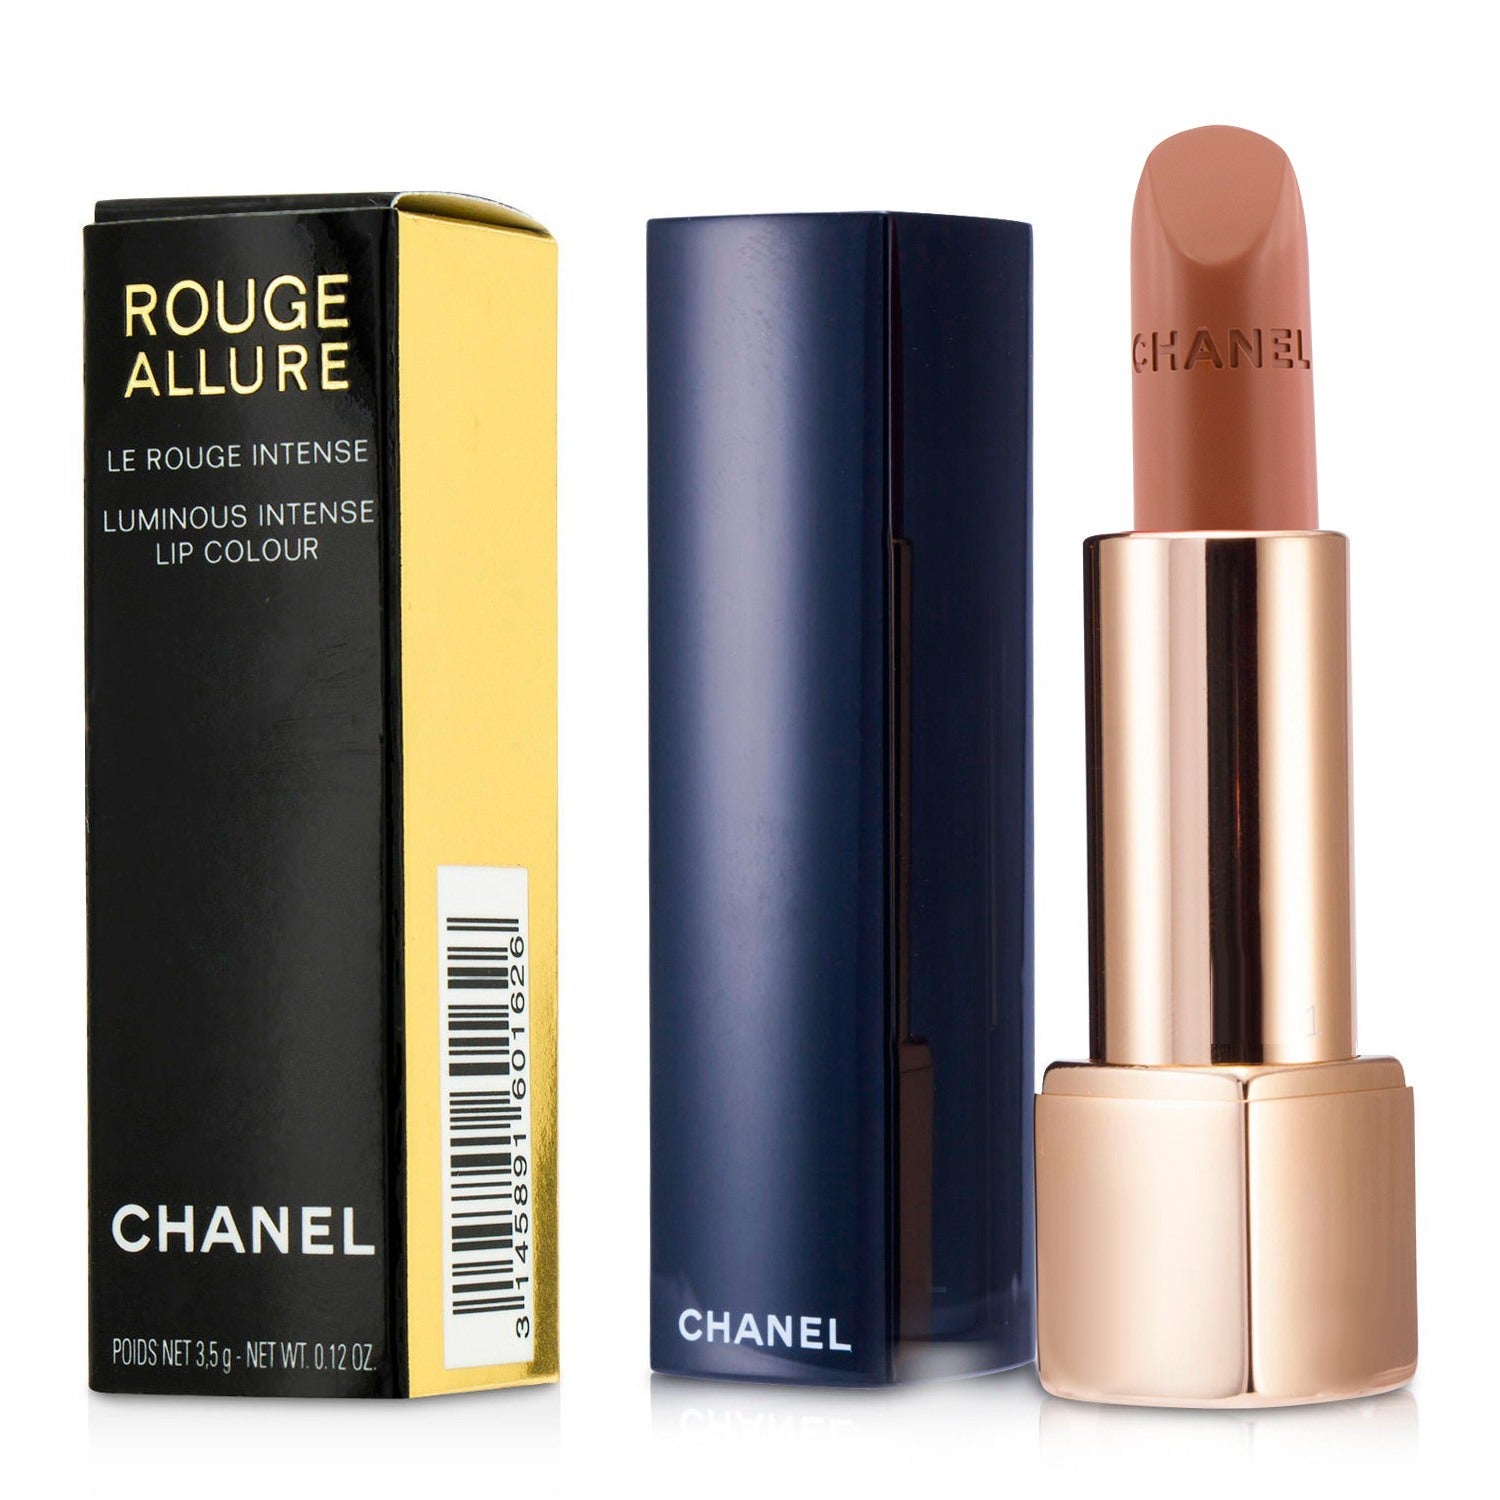 Chanel Rouge Allure Luminous Intense Lip Colour - # 174 Rouge